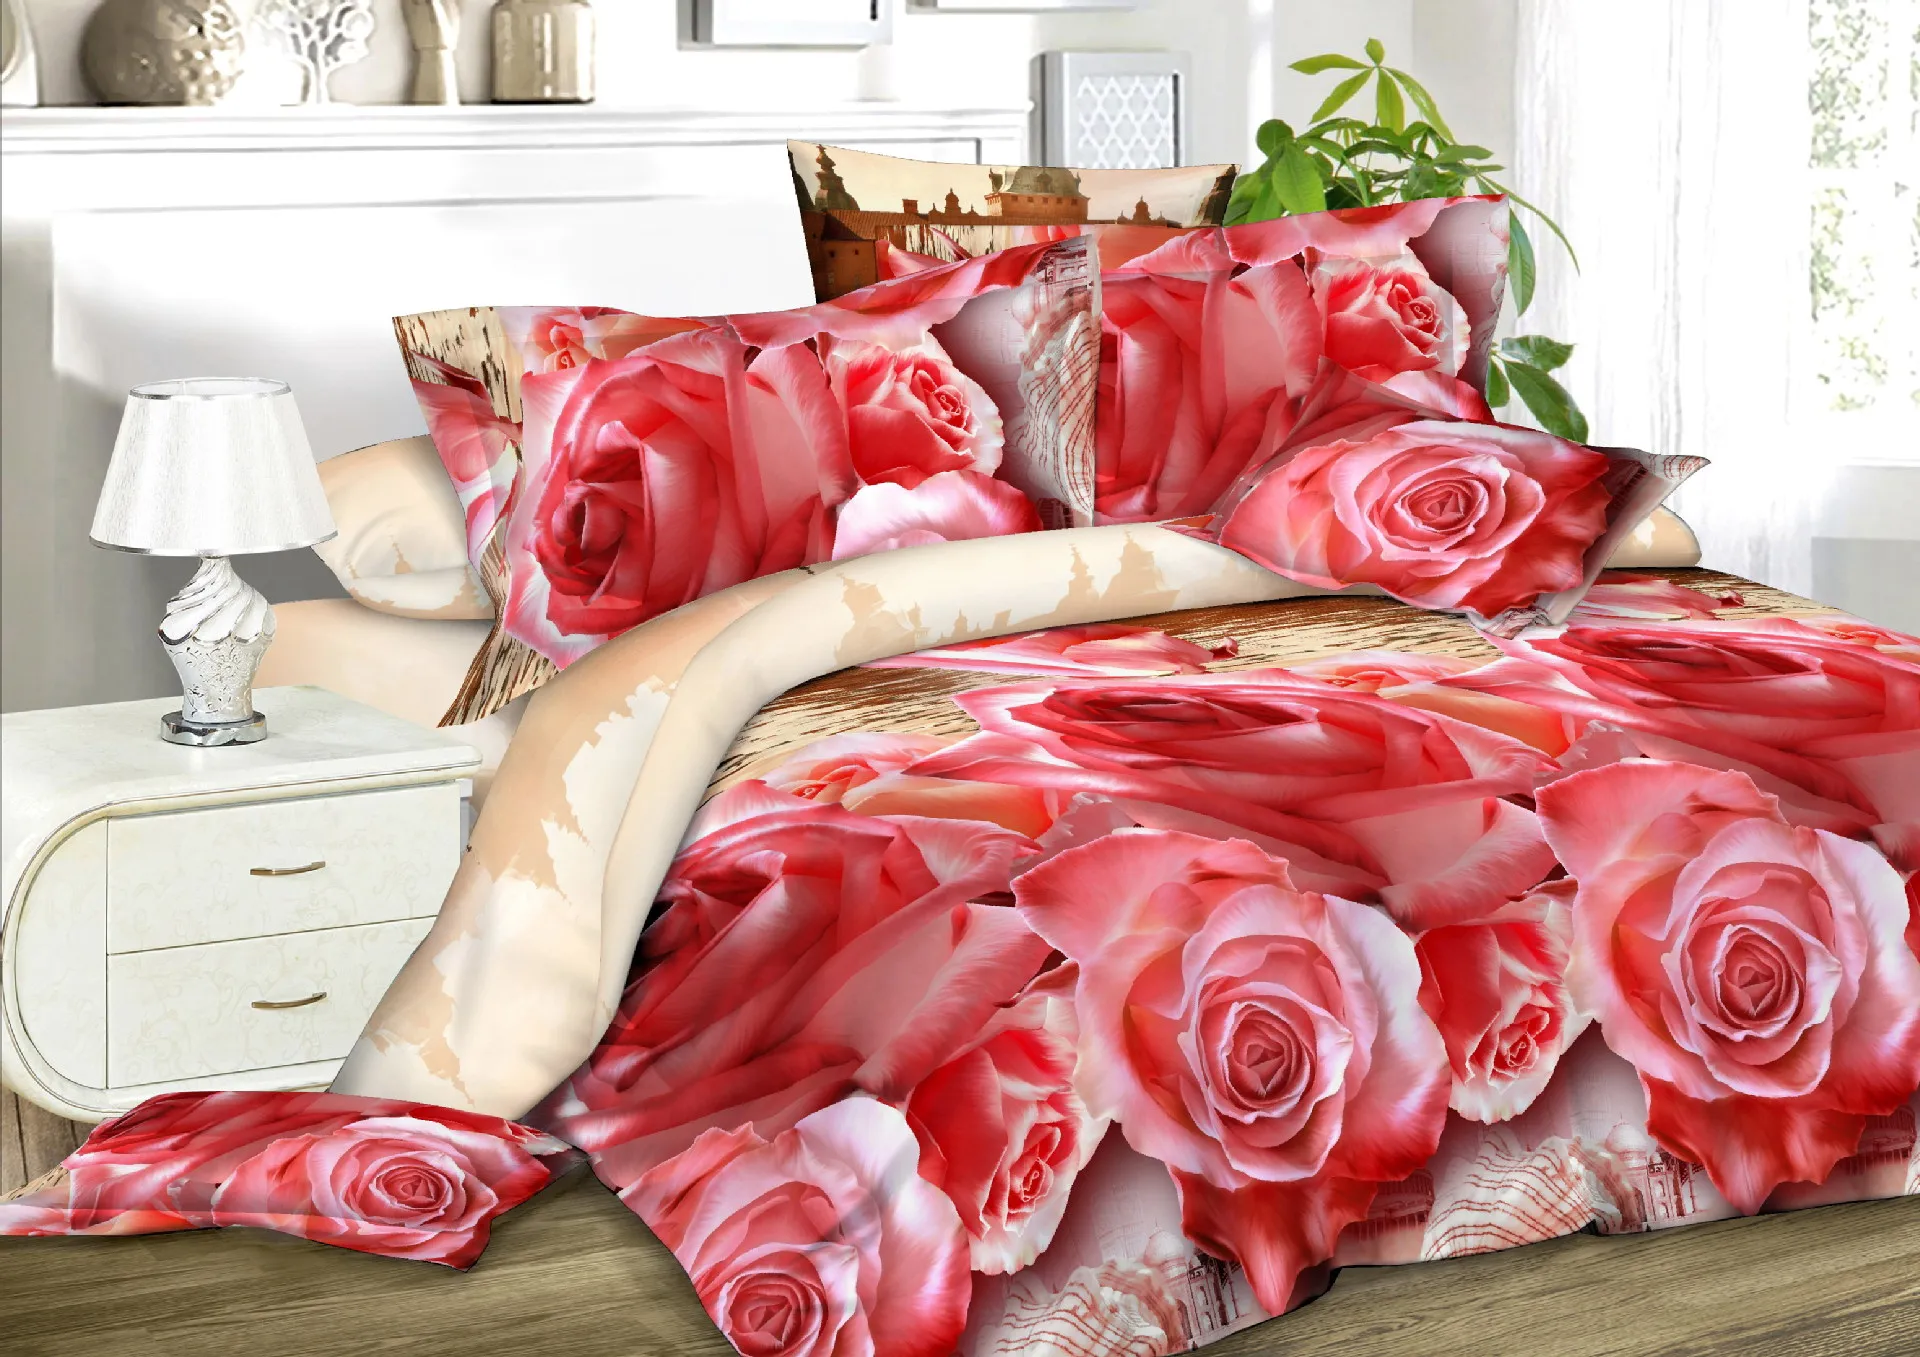 4 шт. хлопок 3D роза постельных принадлежностей Высокое качество Мягкий Пододеяльник Простыня наволочка реактивной печати постельное белье королева кровать Linen30 - Цвет: 11